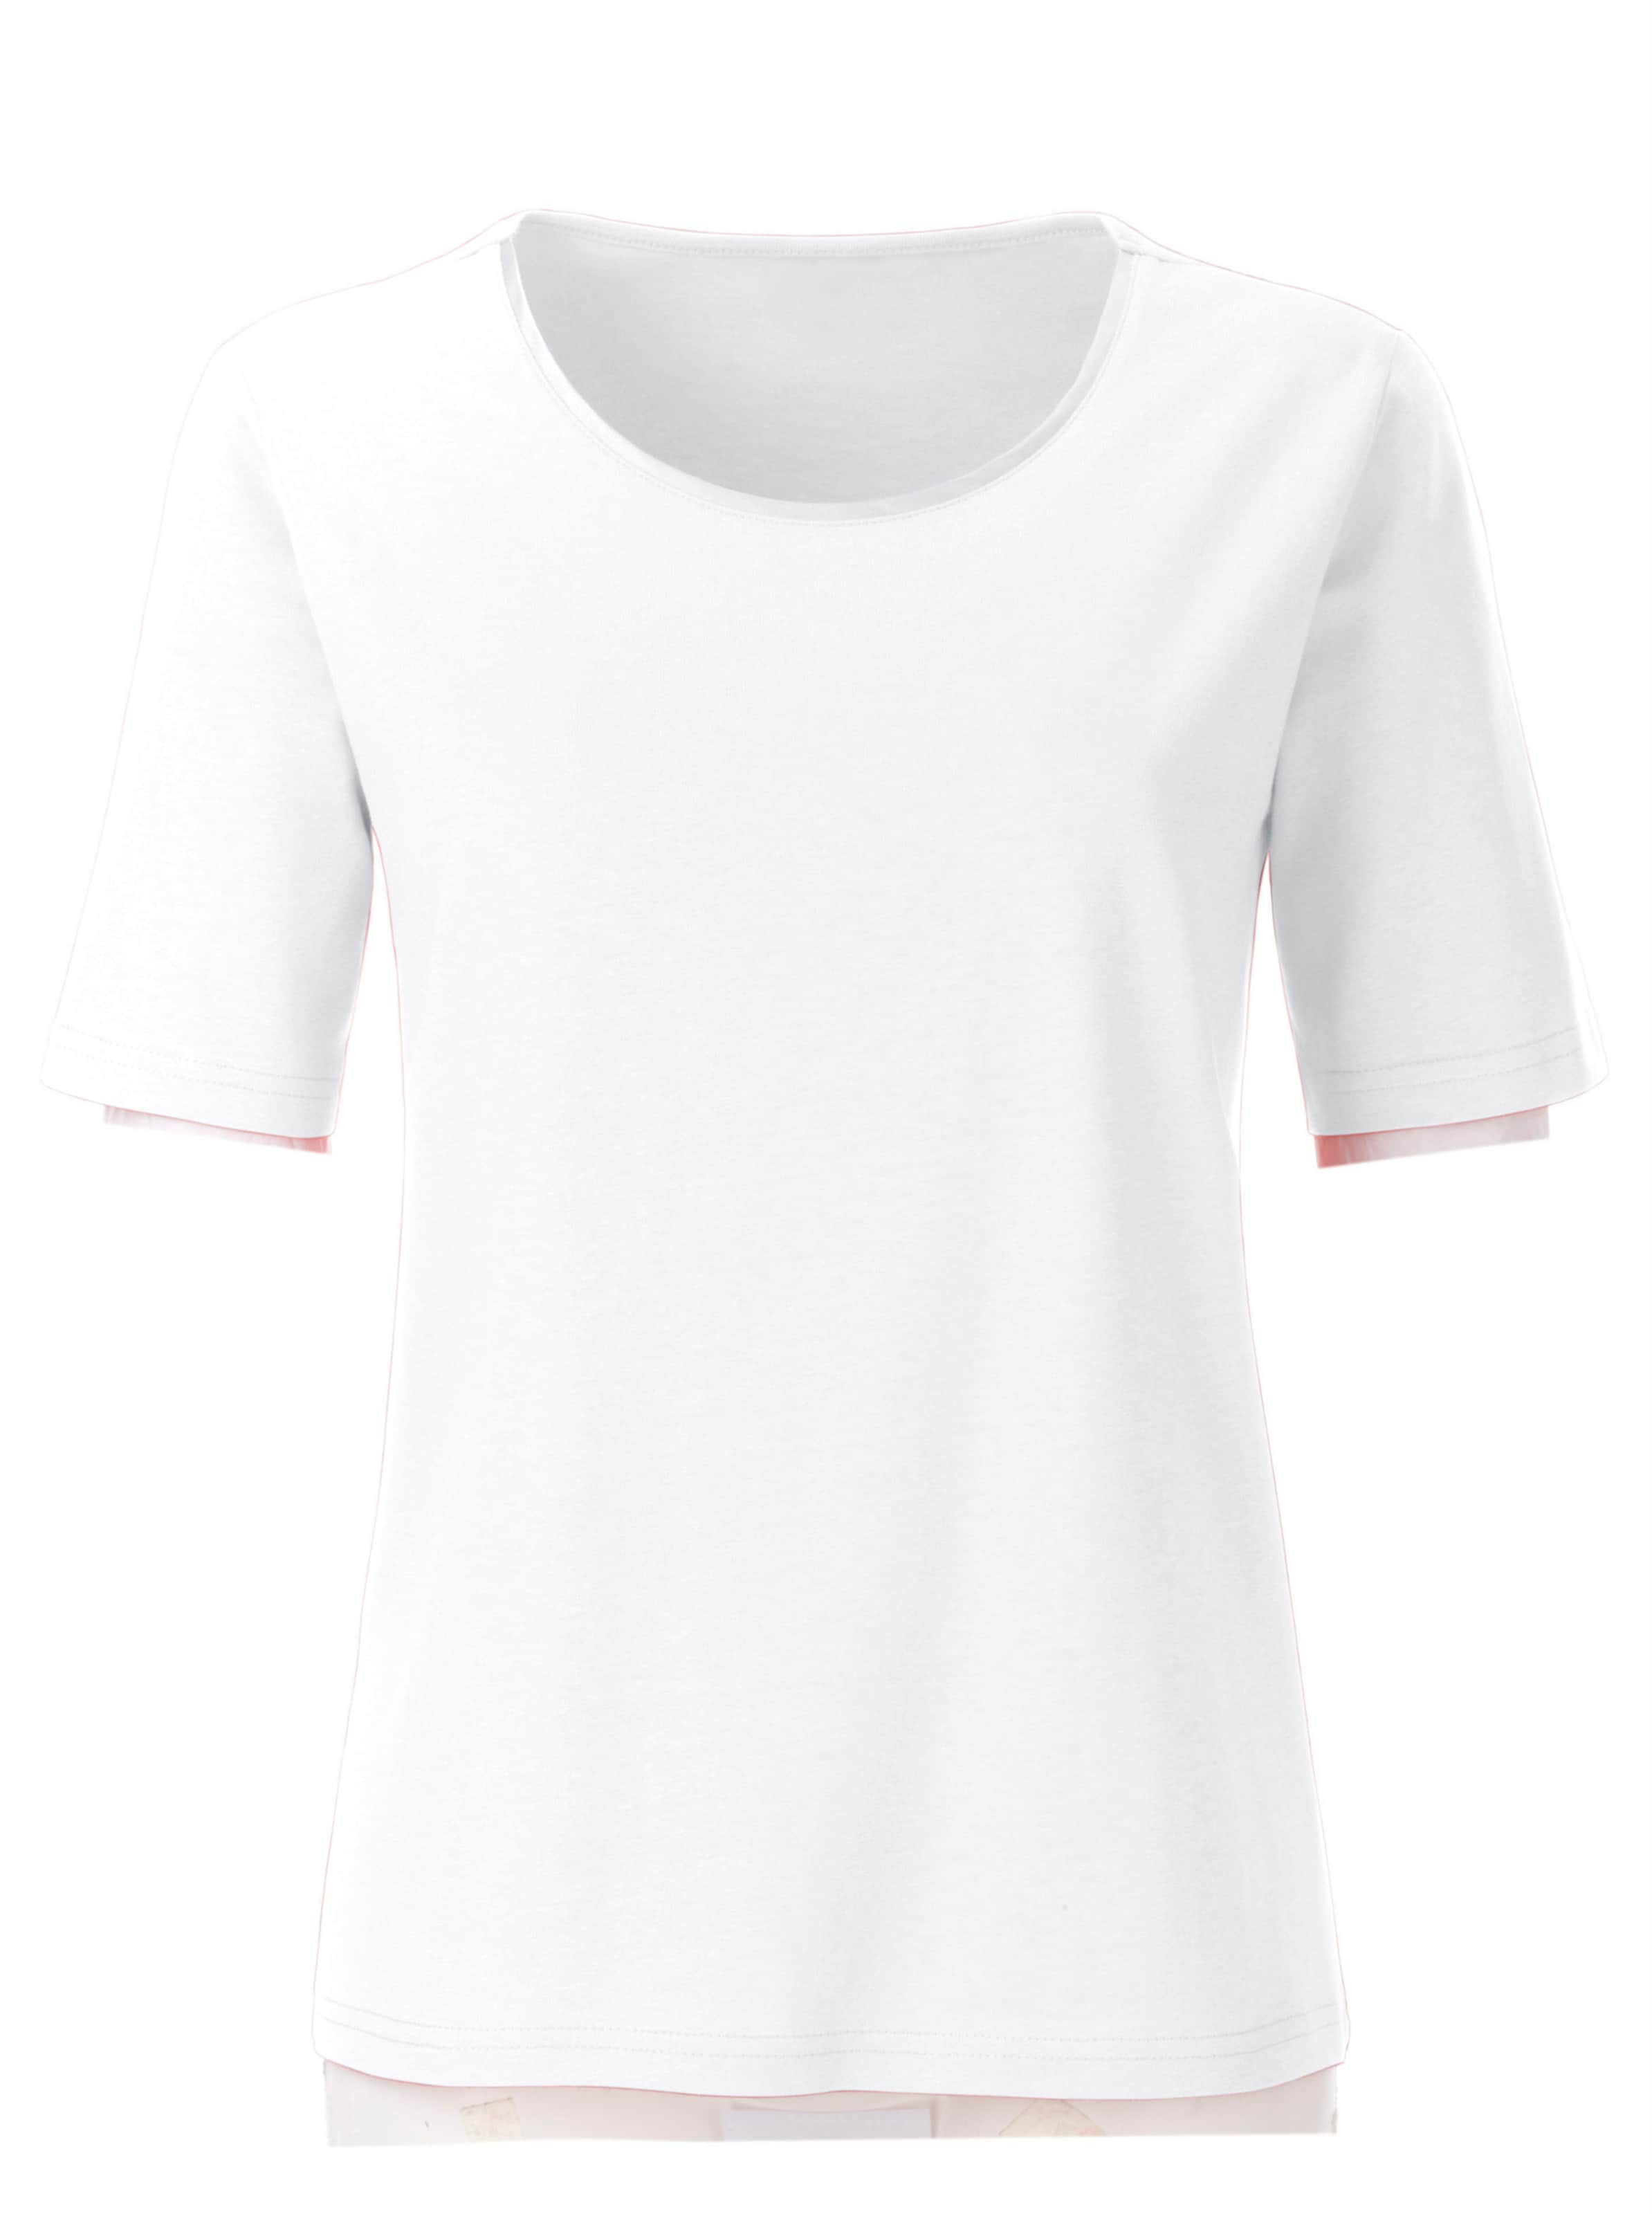 Rundhals Shirt günstig Kaufen-Rundhalsshirt in weiß von heine. Rundhalsshirt in weiß von heine <![CDATA[Anziehend schlicht, anziehend schön: Shirt mit schimmernder Satinpaspel am Ausschnitt. In wunderbar hautschmeichelnder Qualität.]]>. 